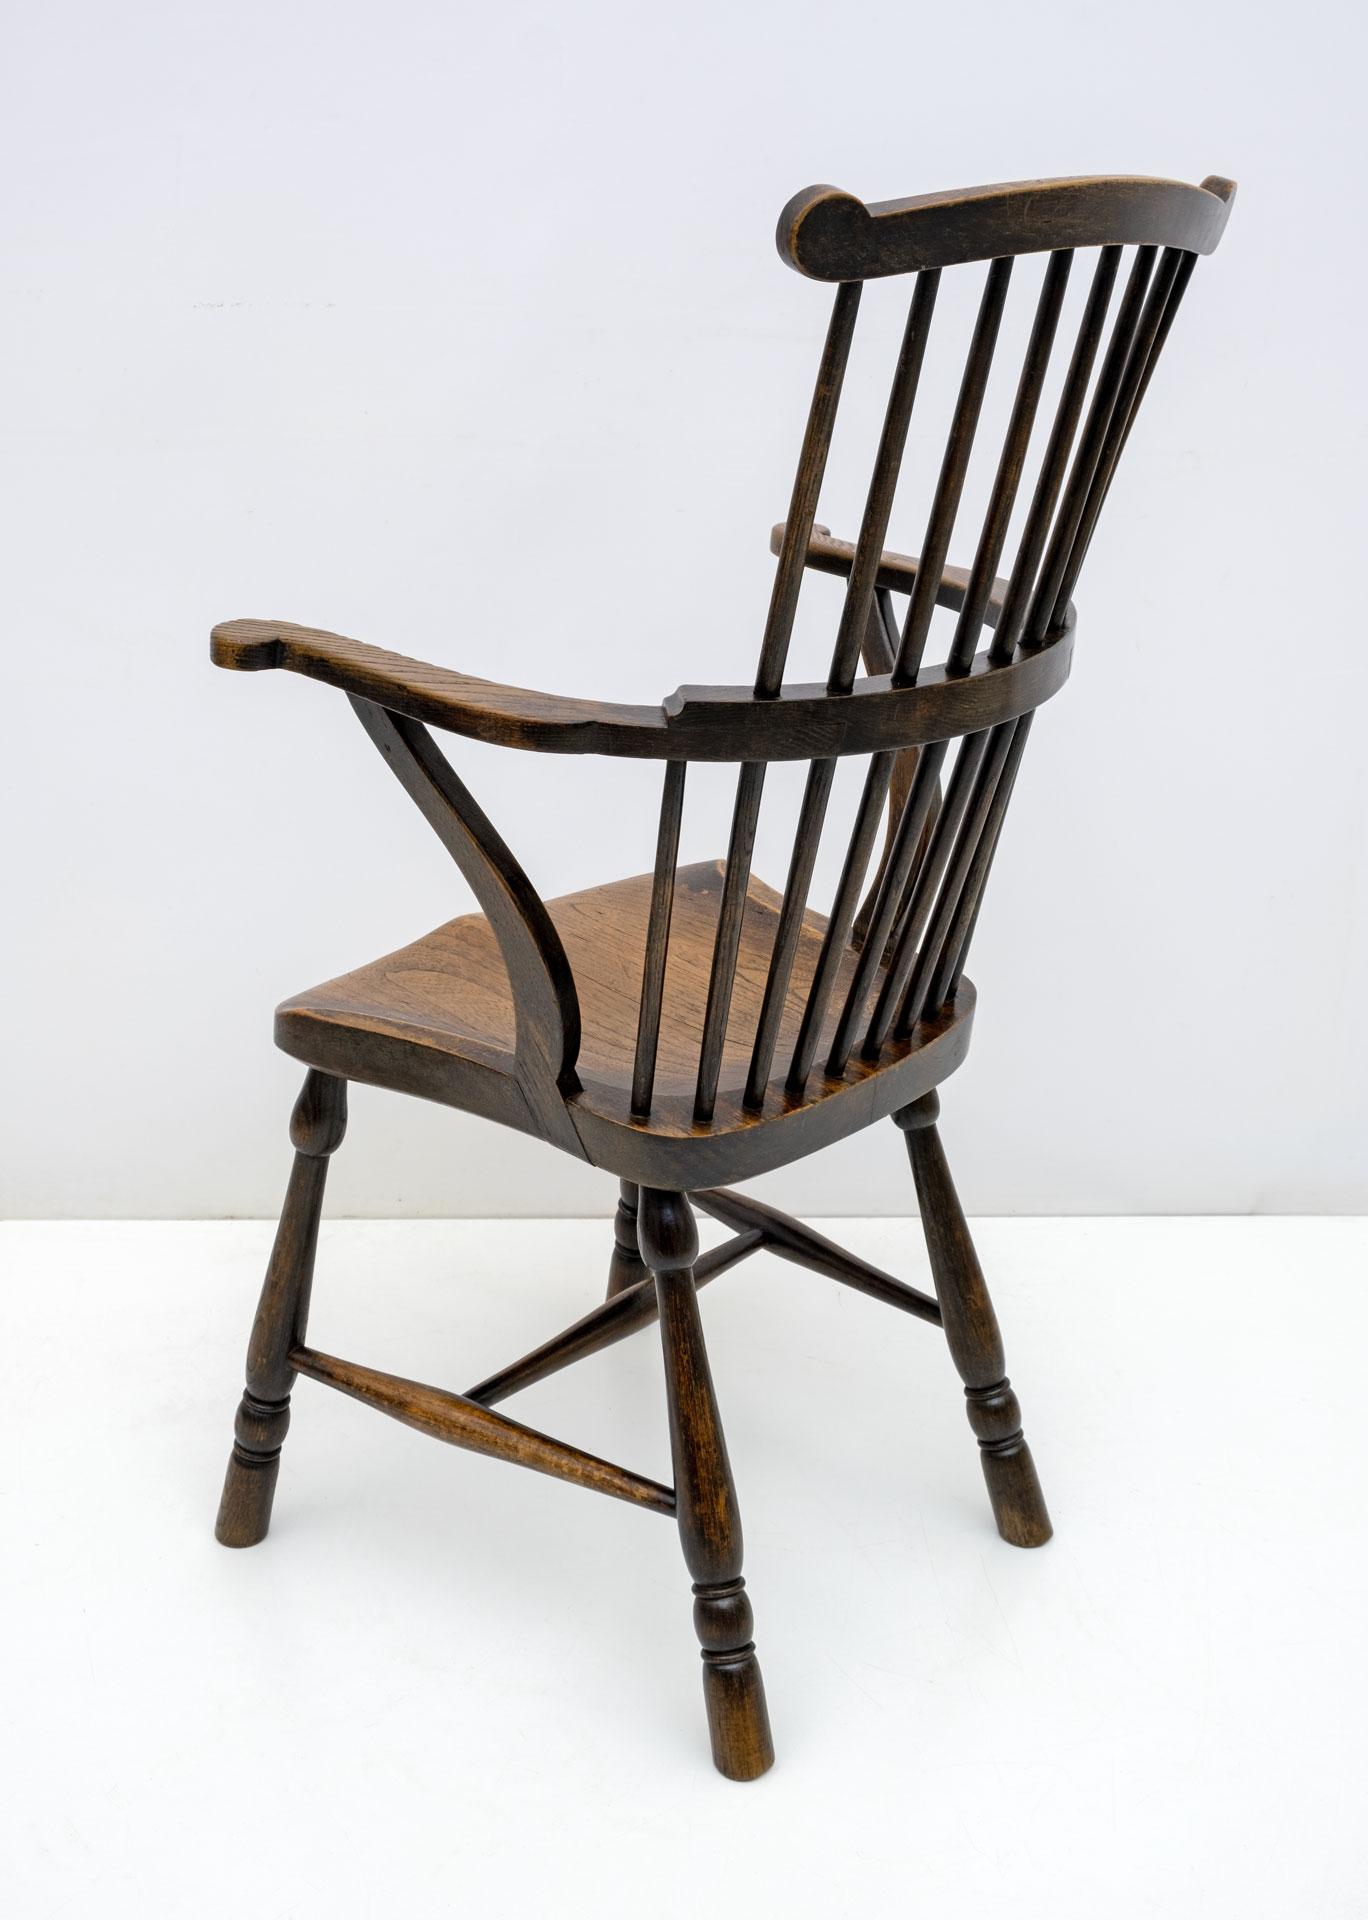 Magnifique chaise Windsor anglaise du XIXe siècle à dossier festonné en frêne et en chêne. Les accoudoirs sont orientés vers l'extérieur et soutenus par des brancards inversés, les pieds tournés sont reliés par un brancard en bois courbé et l'assise